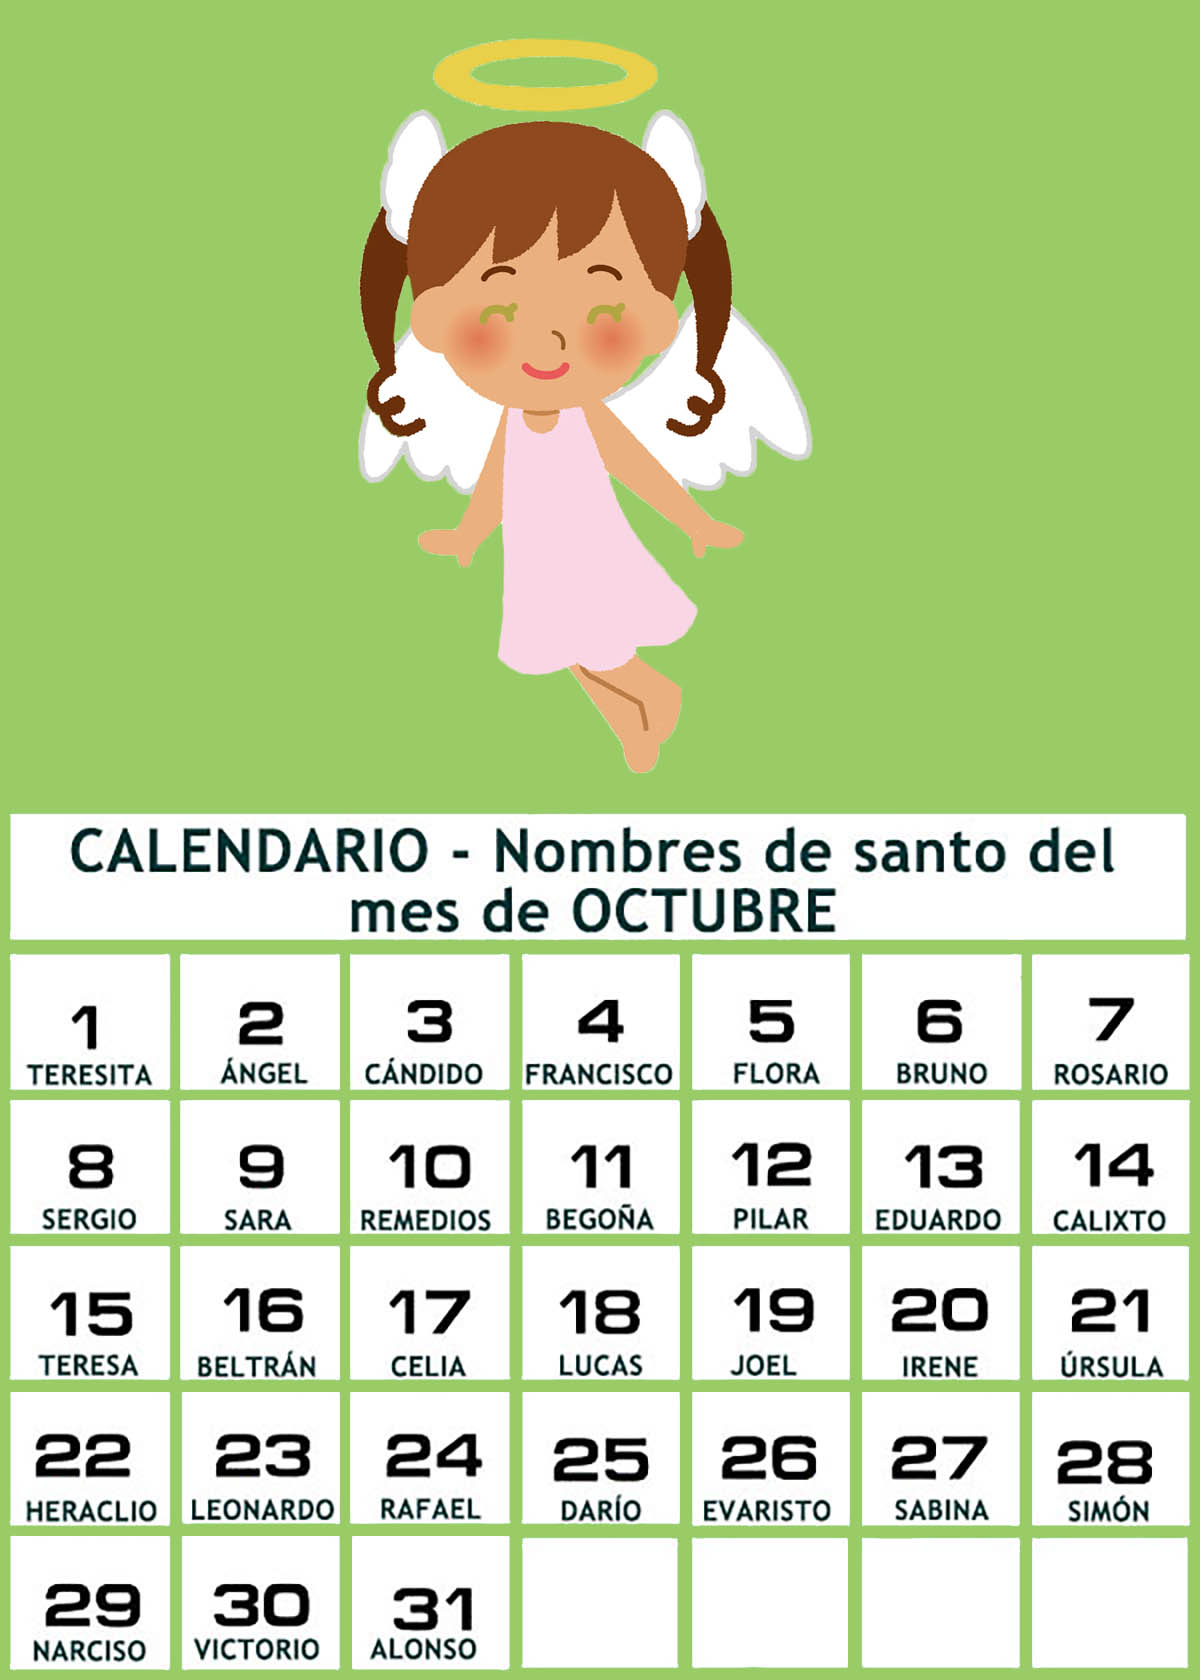 Calendario de los nombres de santos de Octubre